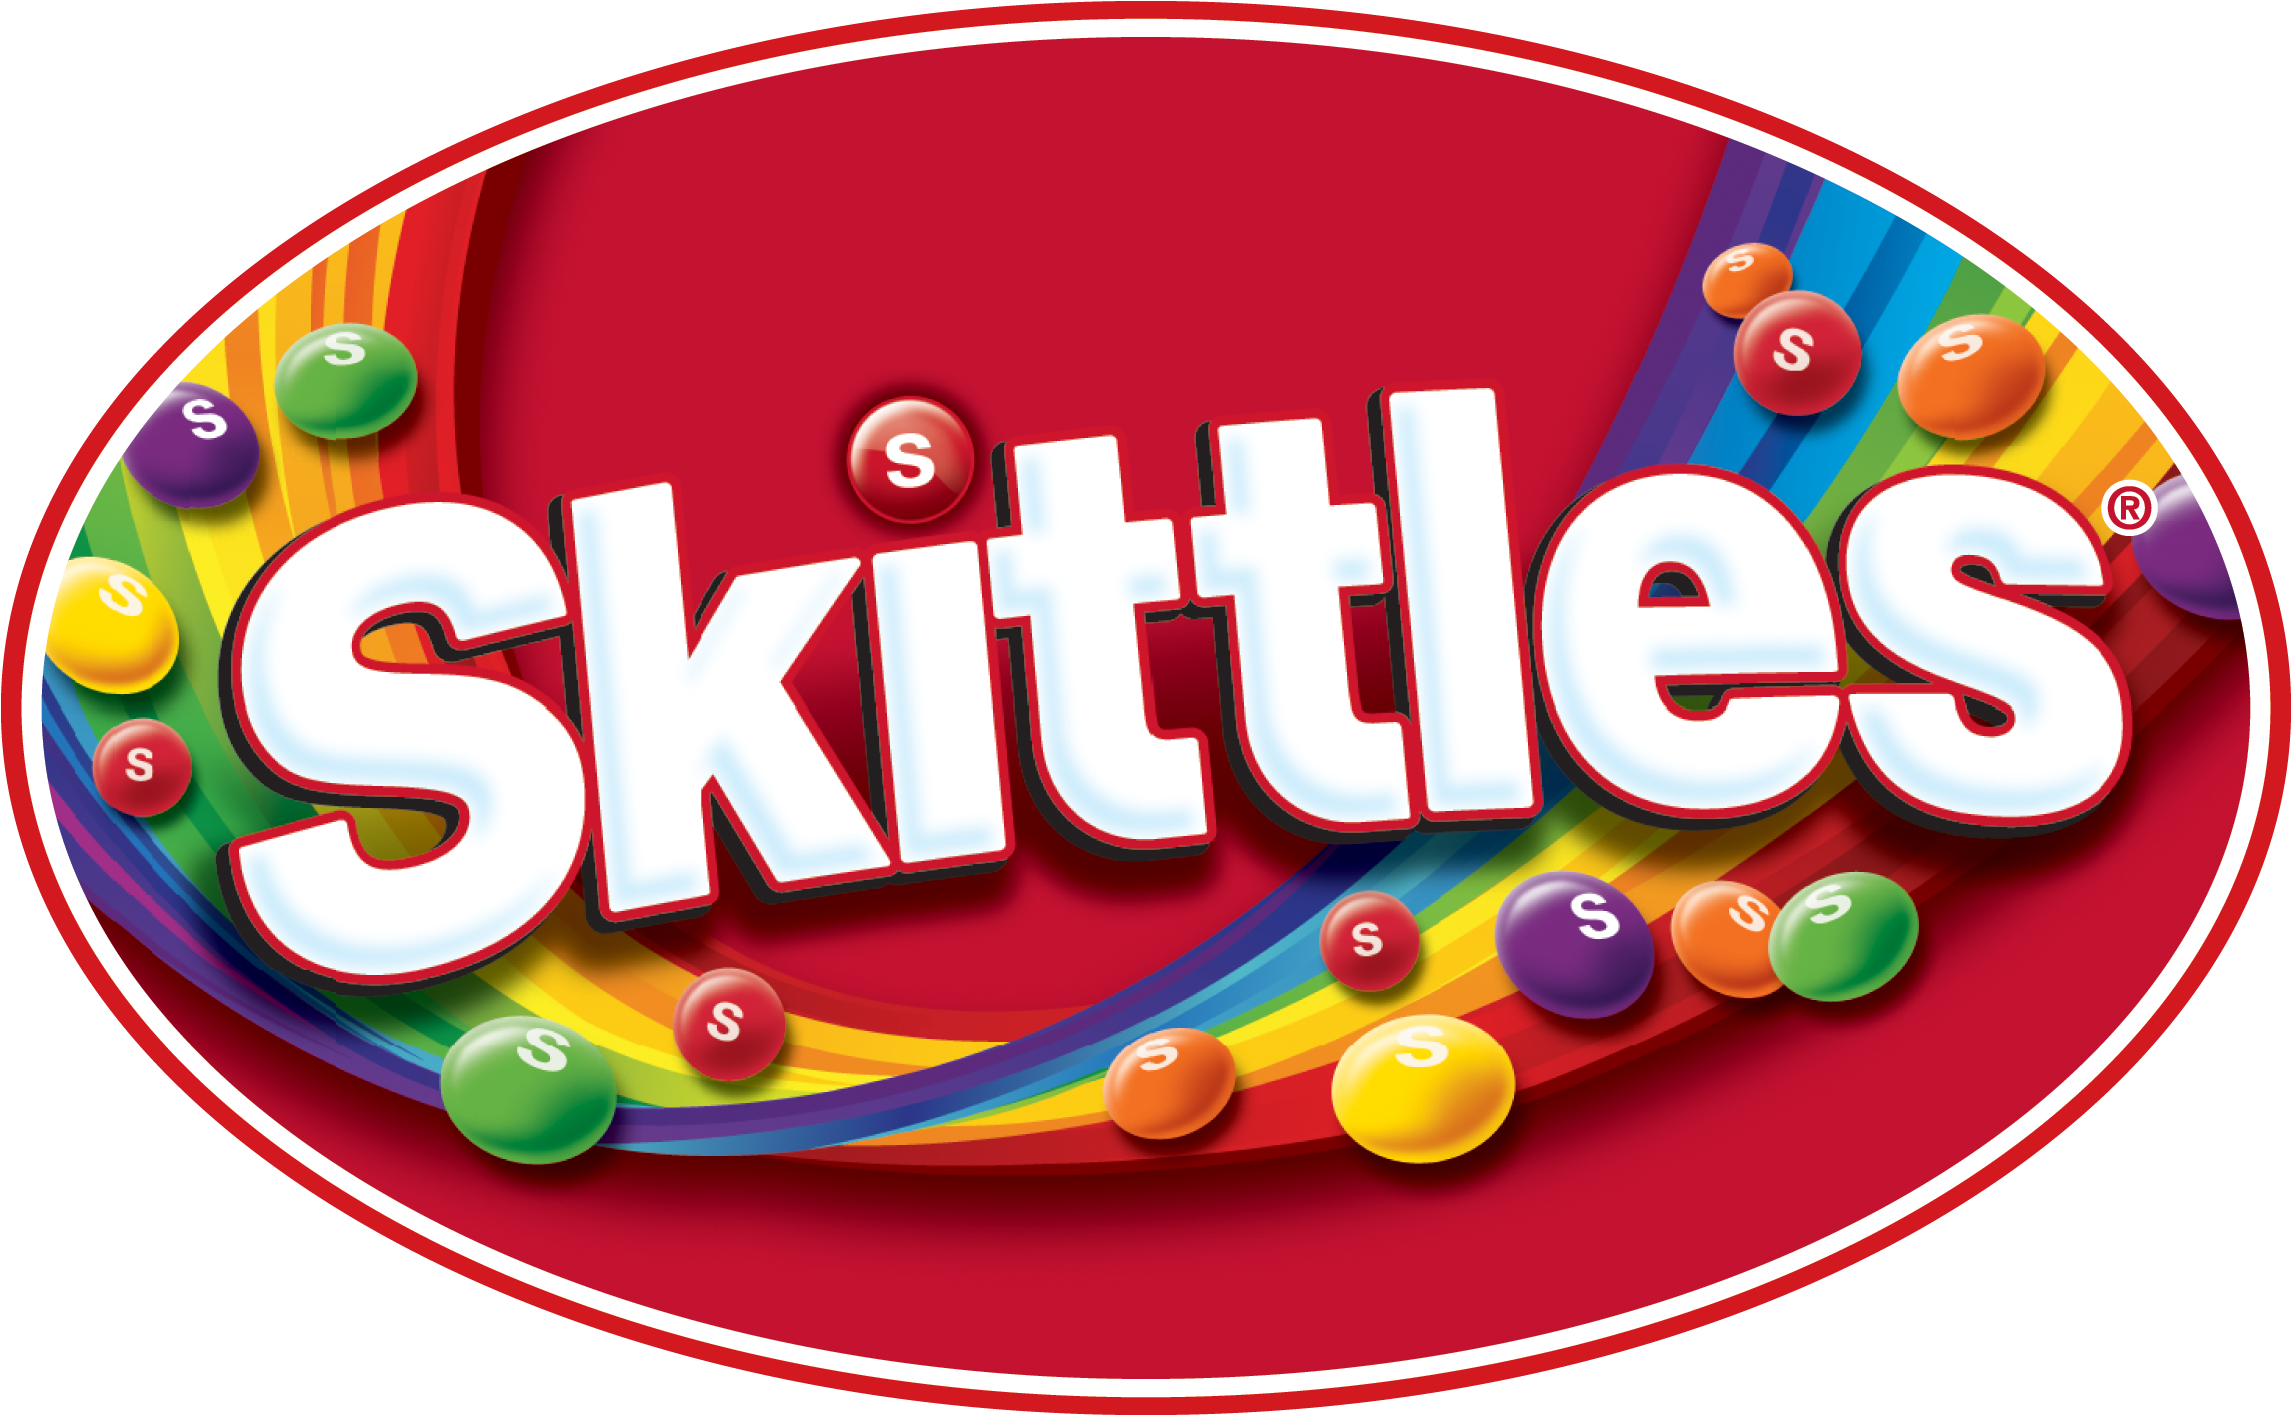 Skittles Logo - Skittles Candy (2500x1600)